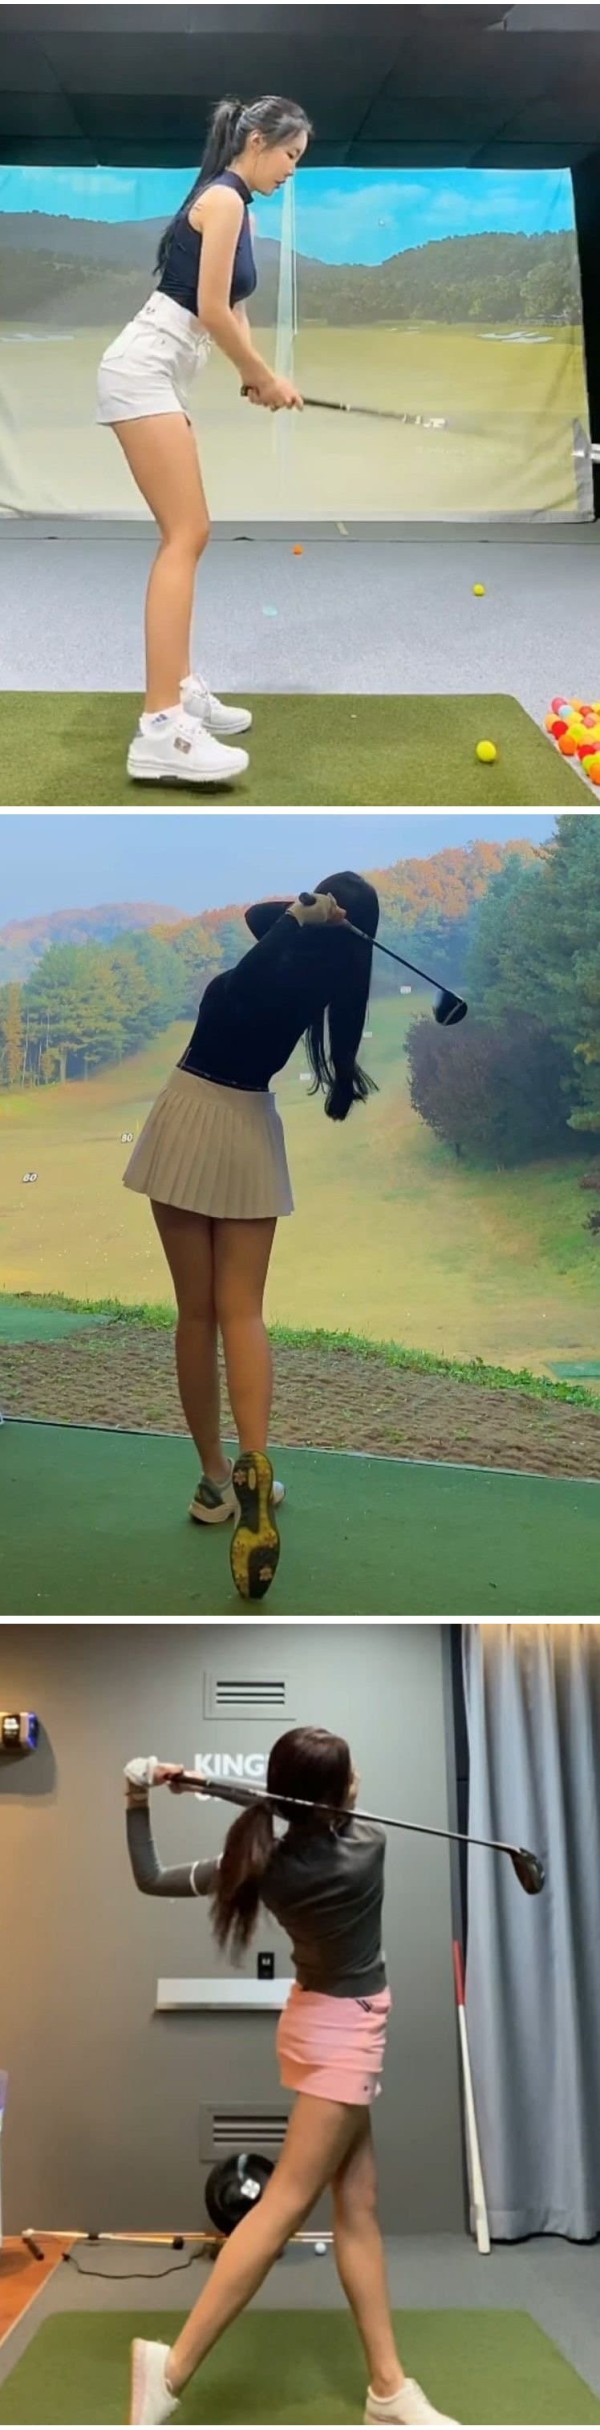 섹시한 골프웨어 골프치는 처자들 몸매가 ㅗㅜㅑ